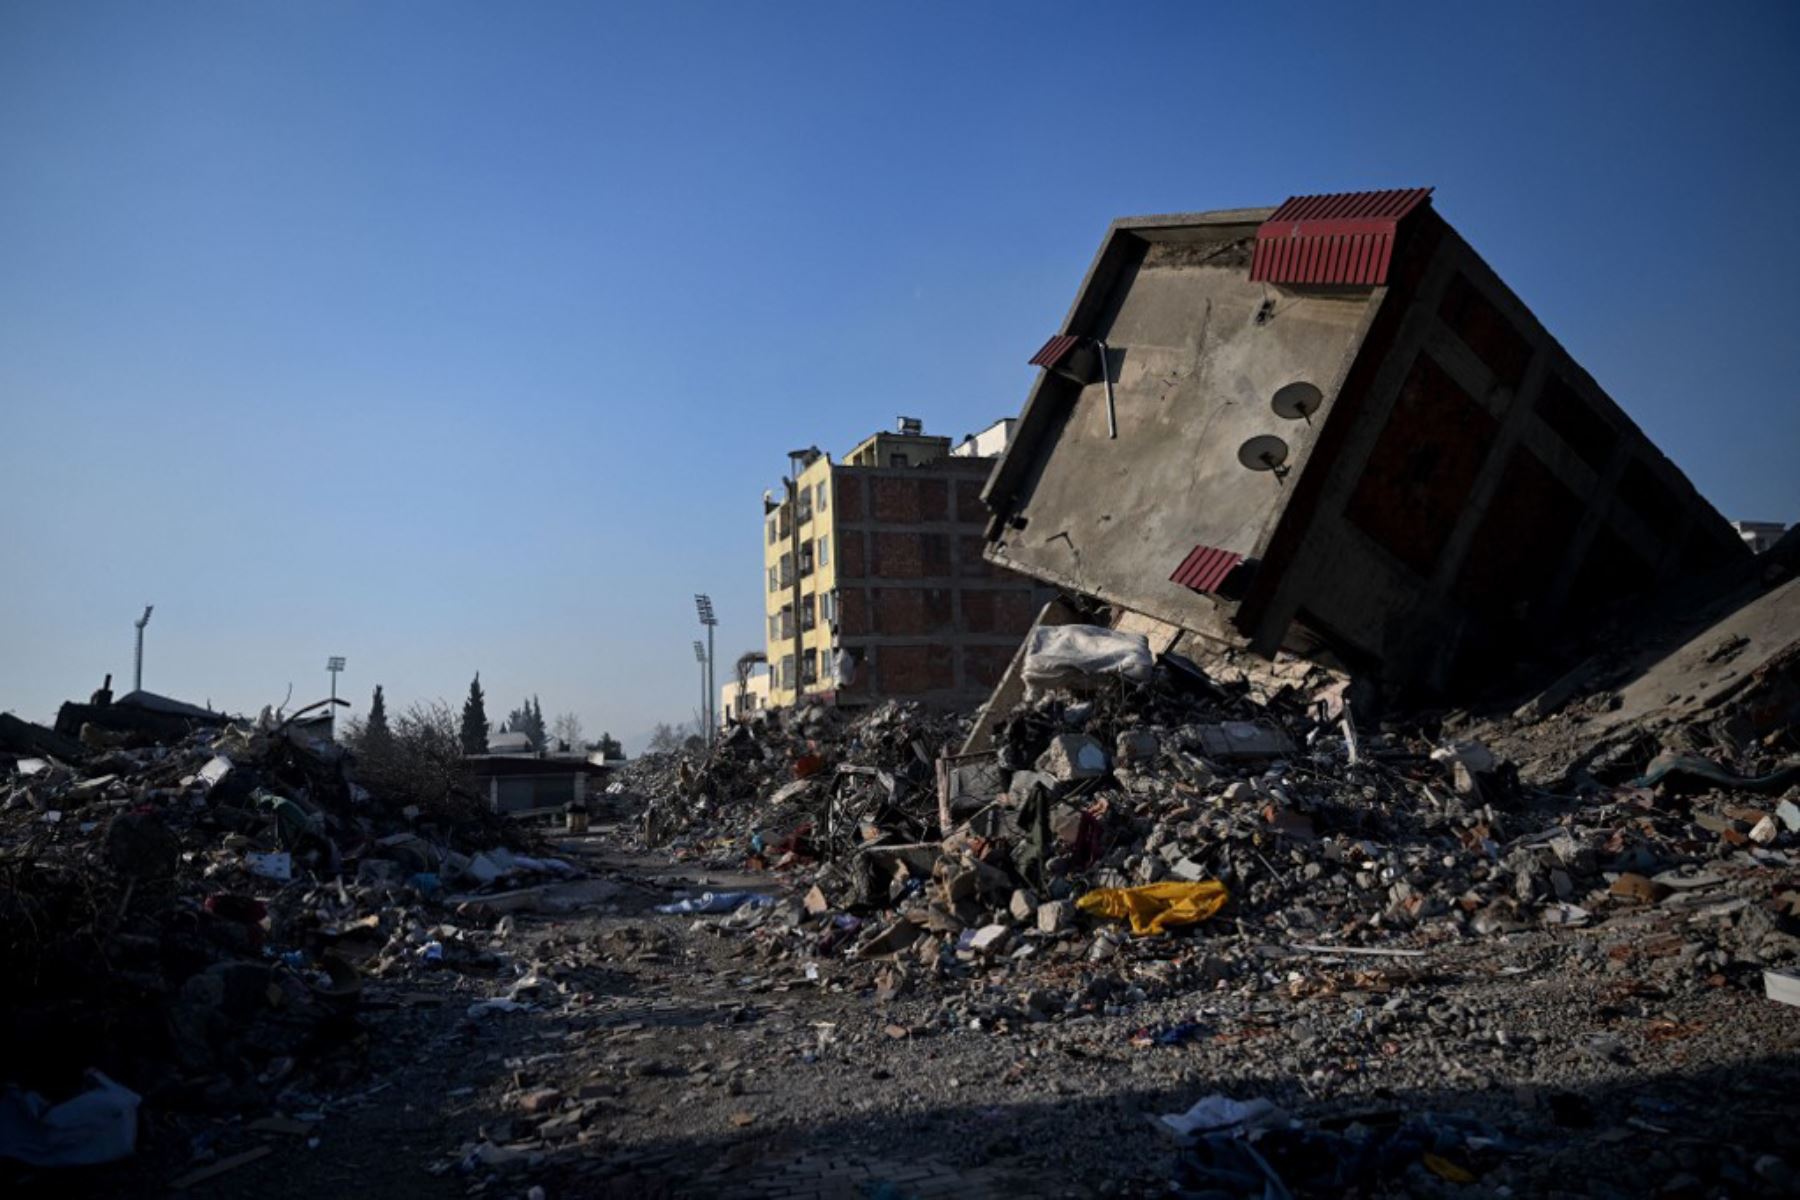 Equipos de rescate comenzaron a reducir la búsqueda de sobrevivientes, una semana después de que terremotos devastaran partes de Turquía y Siria. Foto: AFP